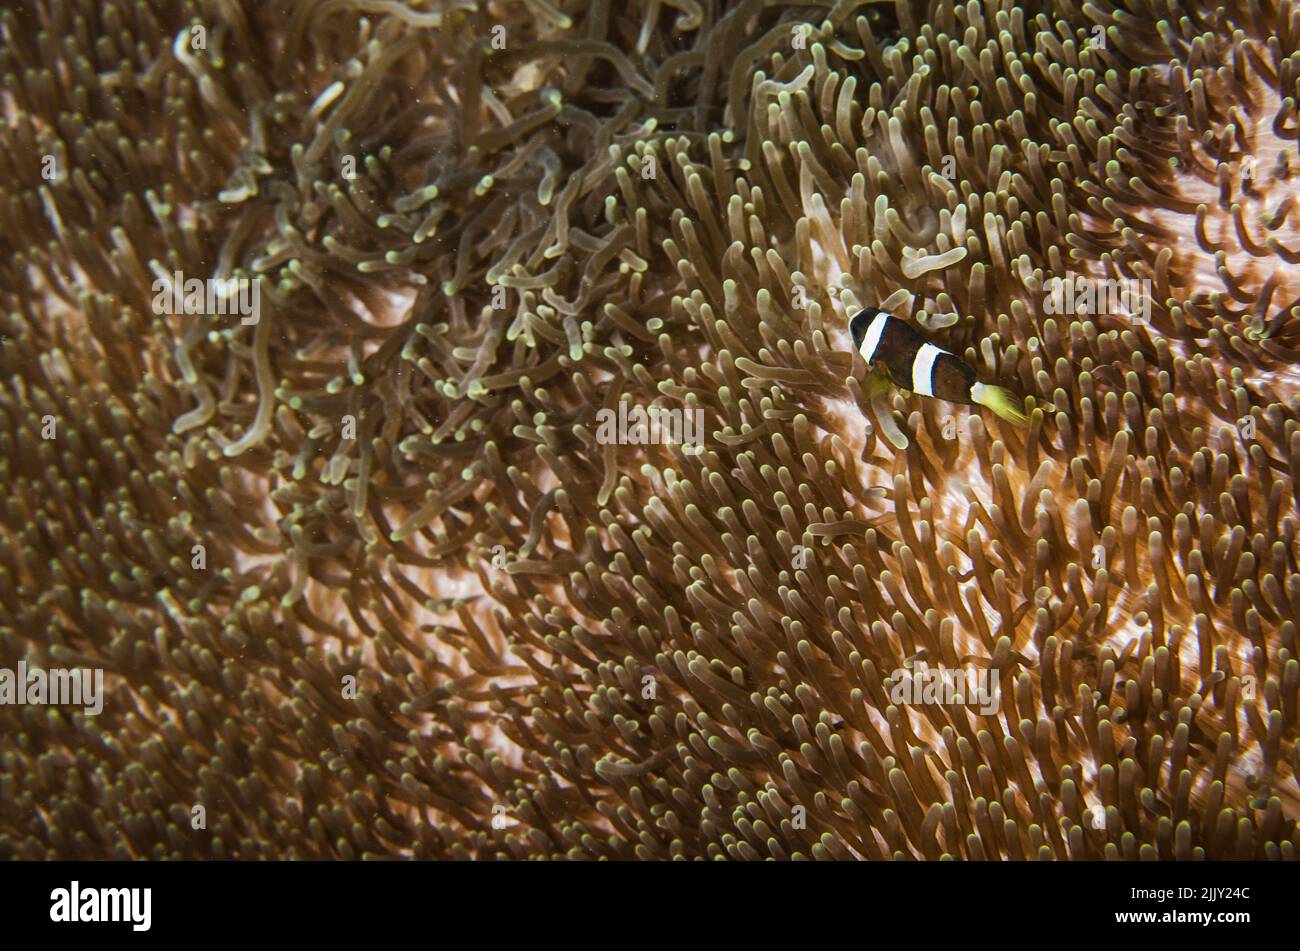 Anemone Magnífico del Mar, Heteractis magnifica, Stichodactylidae, con el pez payaso Amphiprion clarkii, Pomacentridae, Anilao, Batangas, Filipinas Foto de stock